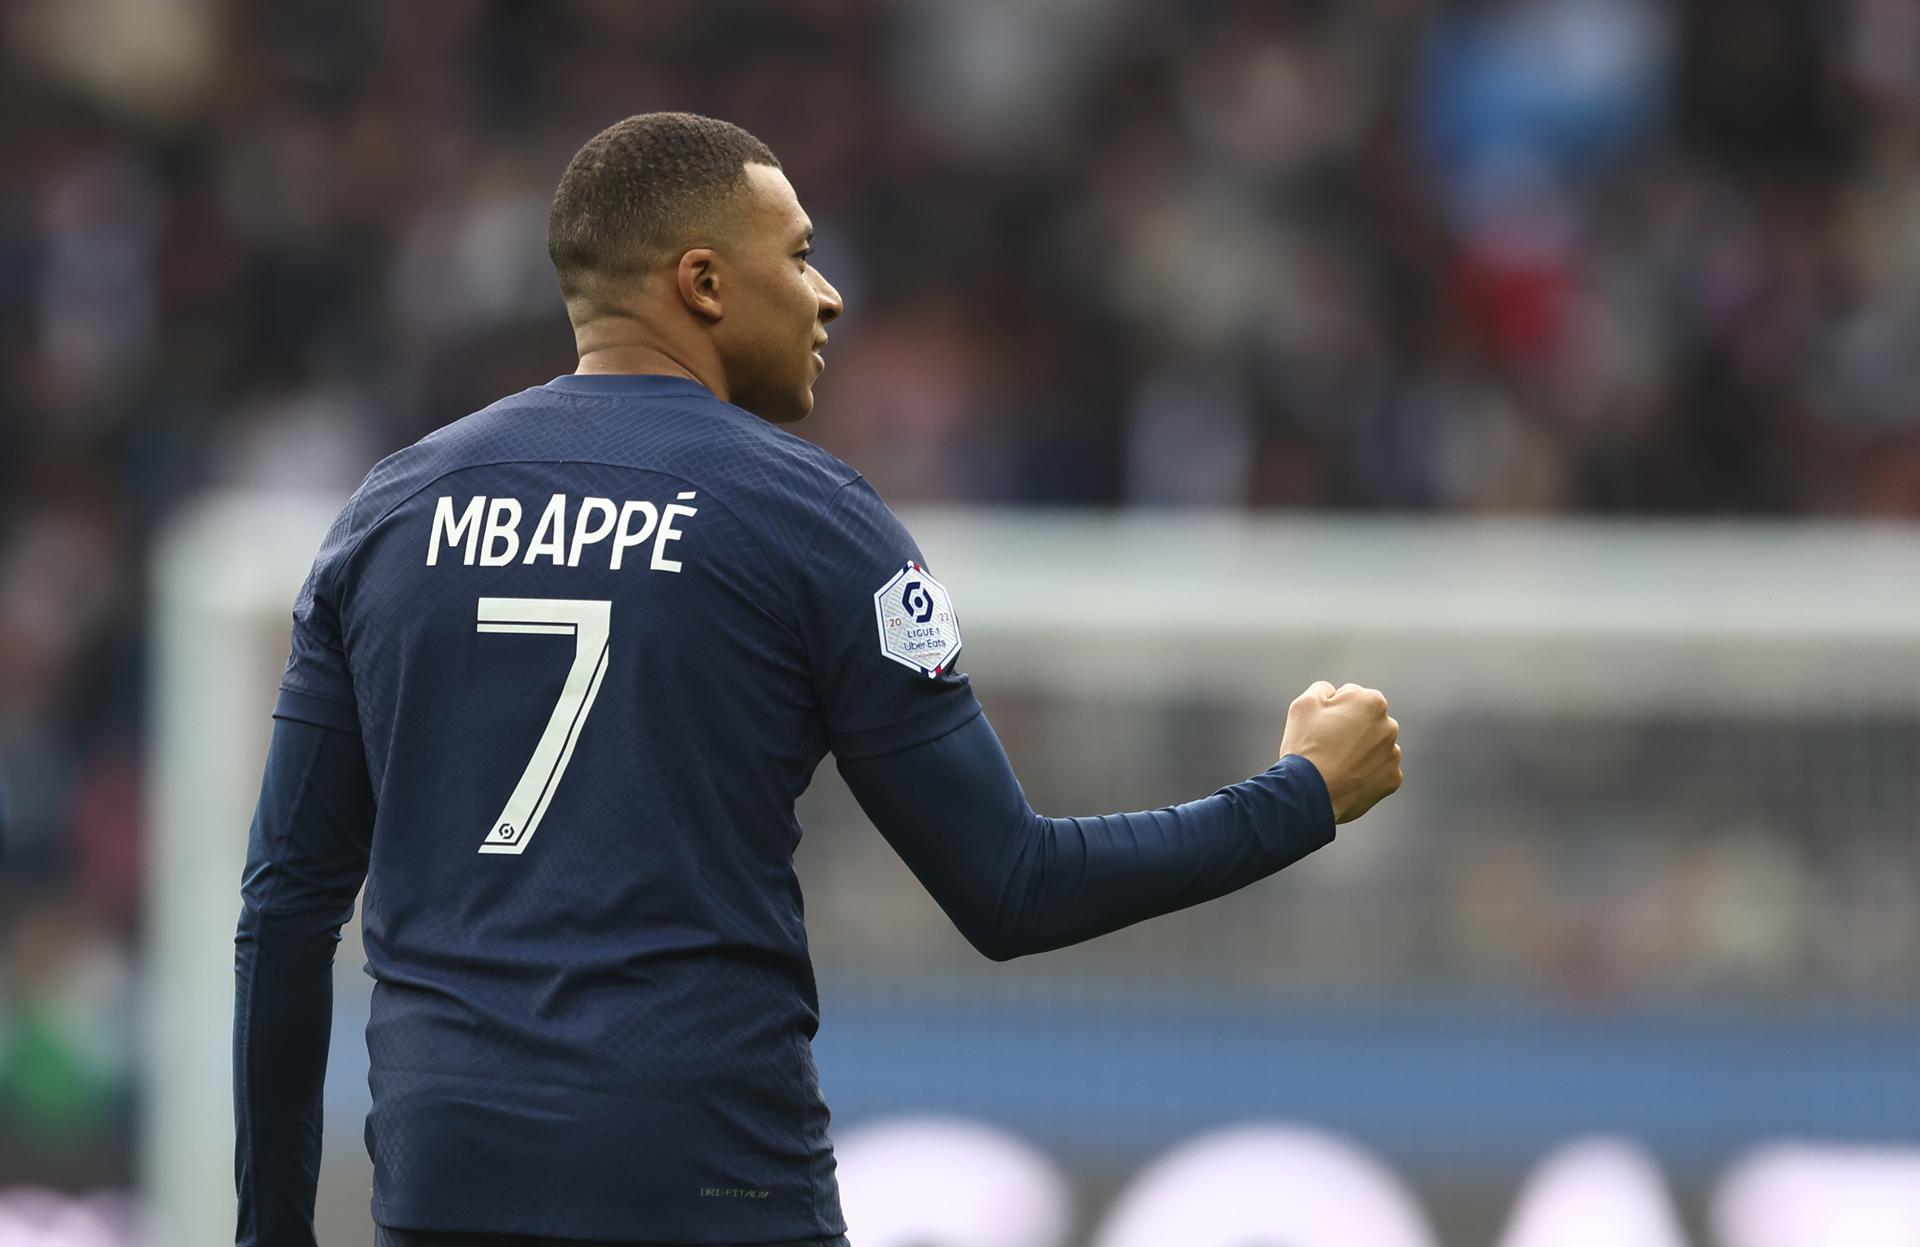 Mbappé, al asalto del récord goleador de Cavani